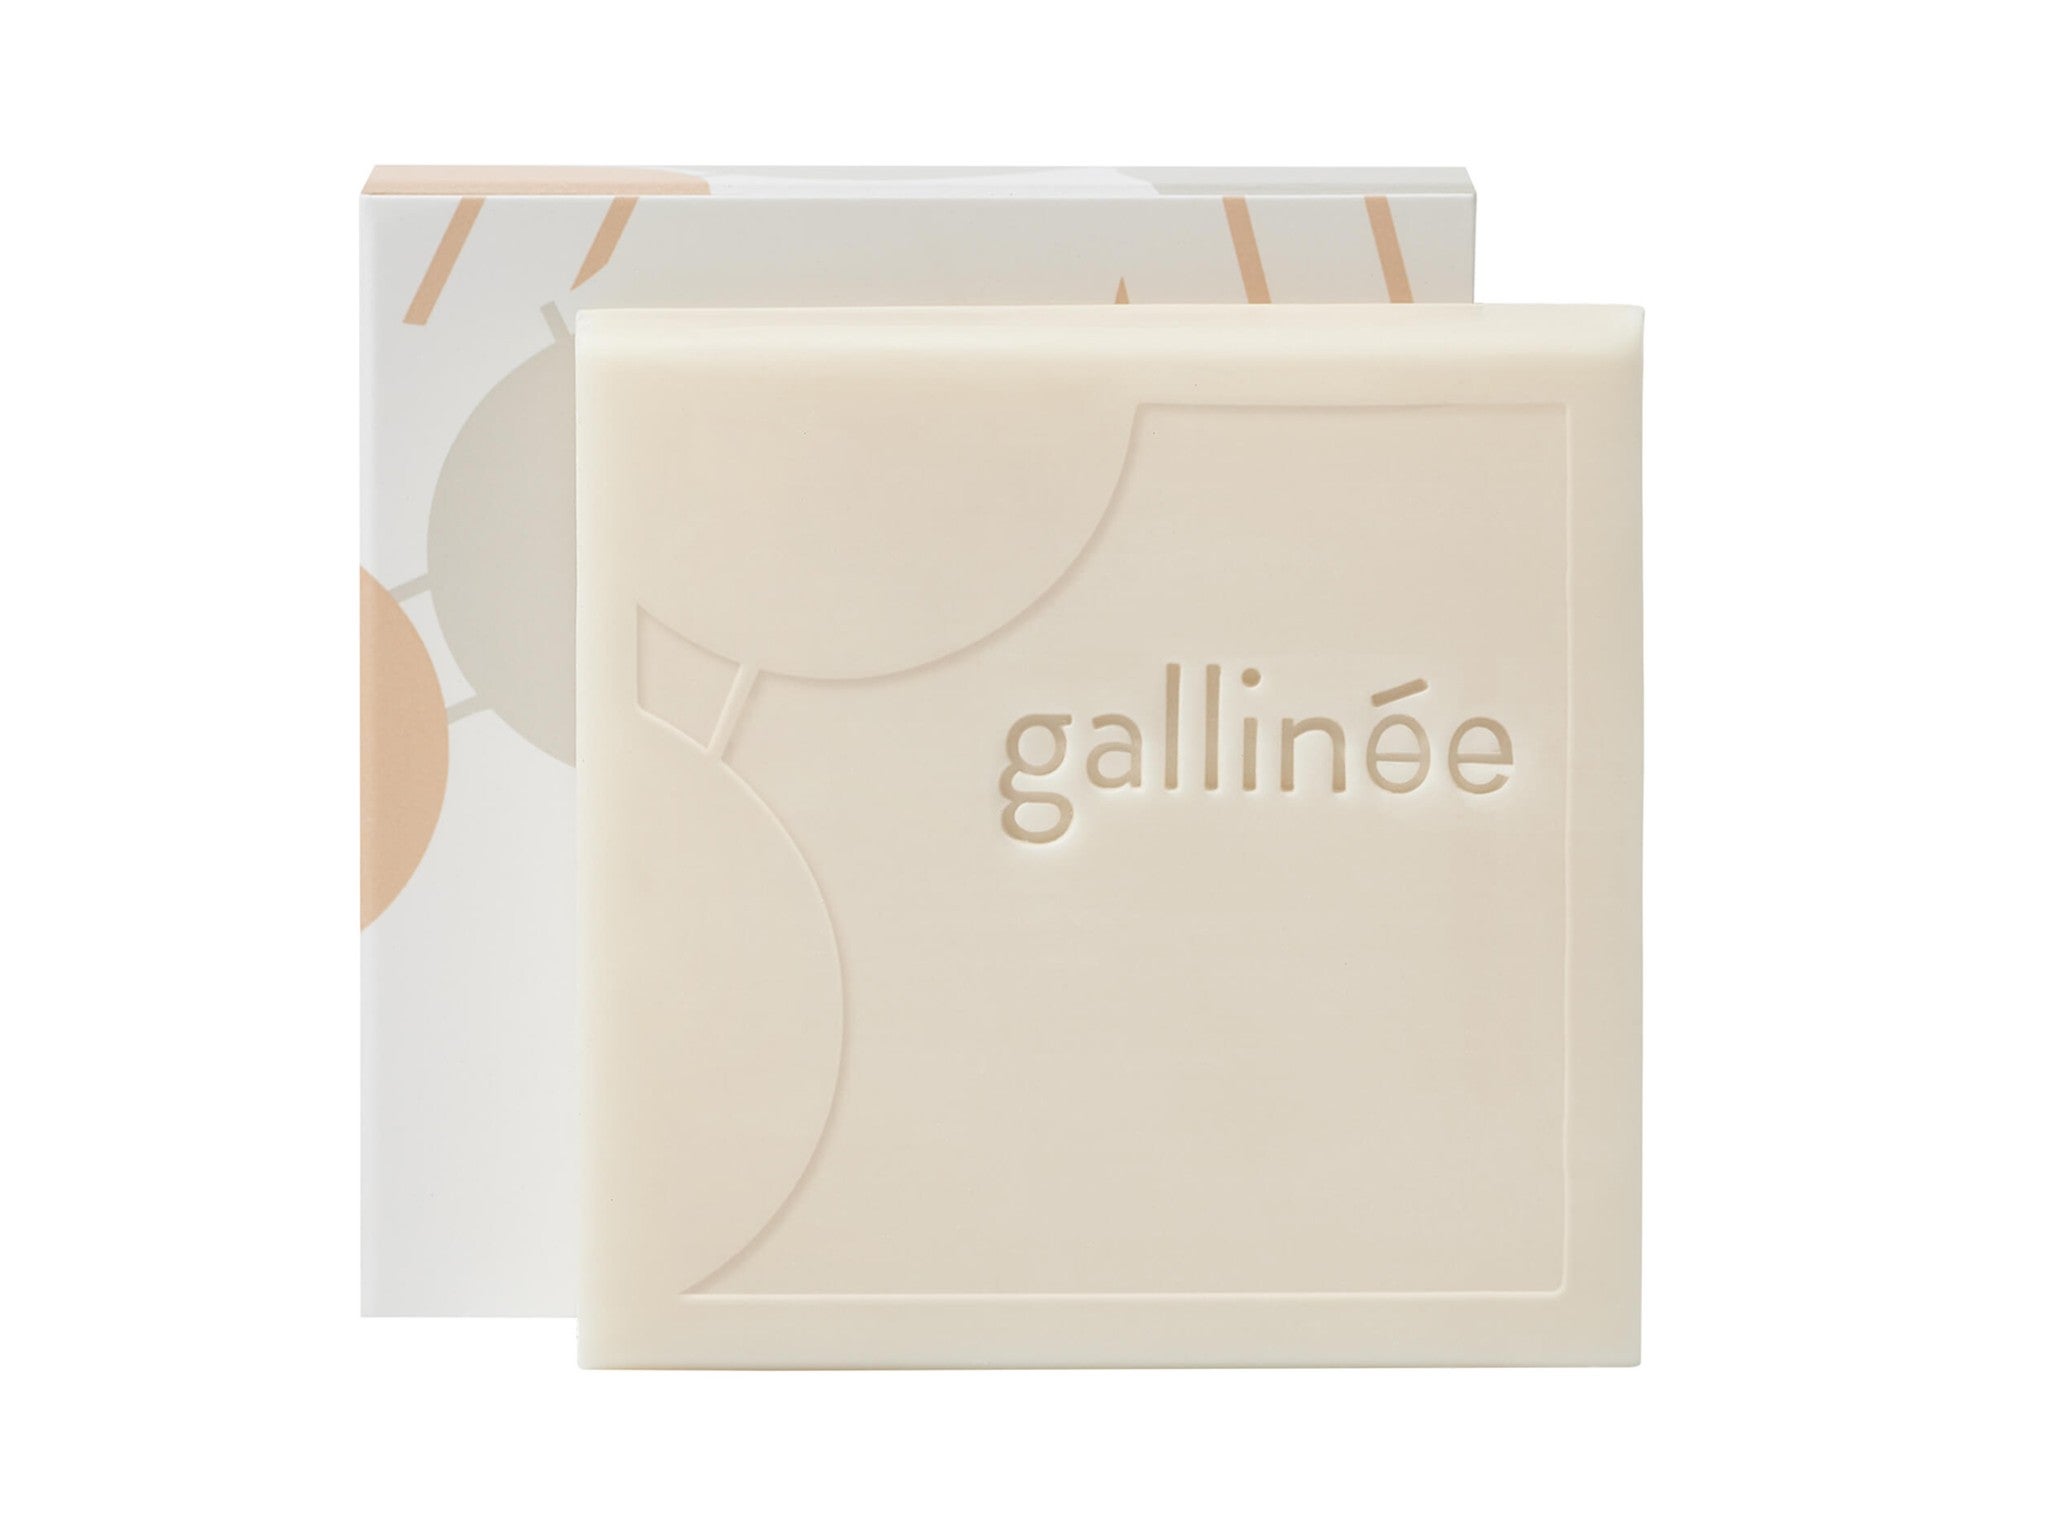 Gallinée prebiotic cleansing bar, 100g indybest.jpg